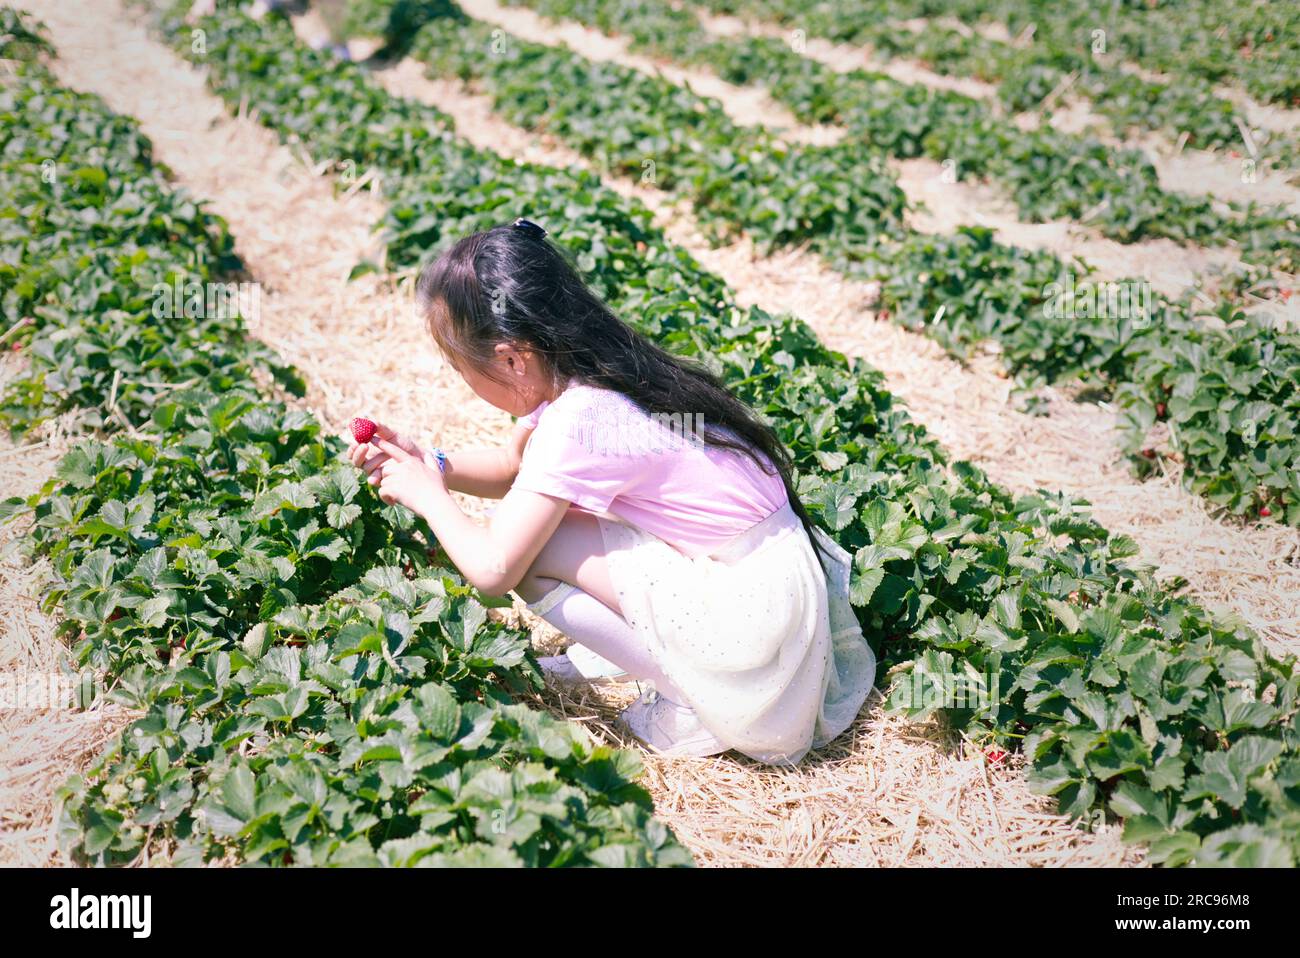 une jeune fille cueillant des fraises en été - la saison de pointe des fraises. Grande activité de plein air. Choisissez vos propres fraises Banque D'Images